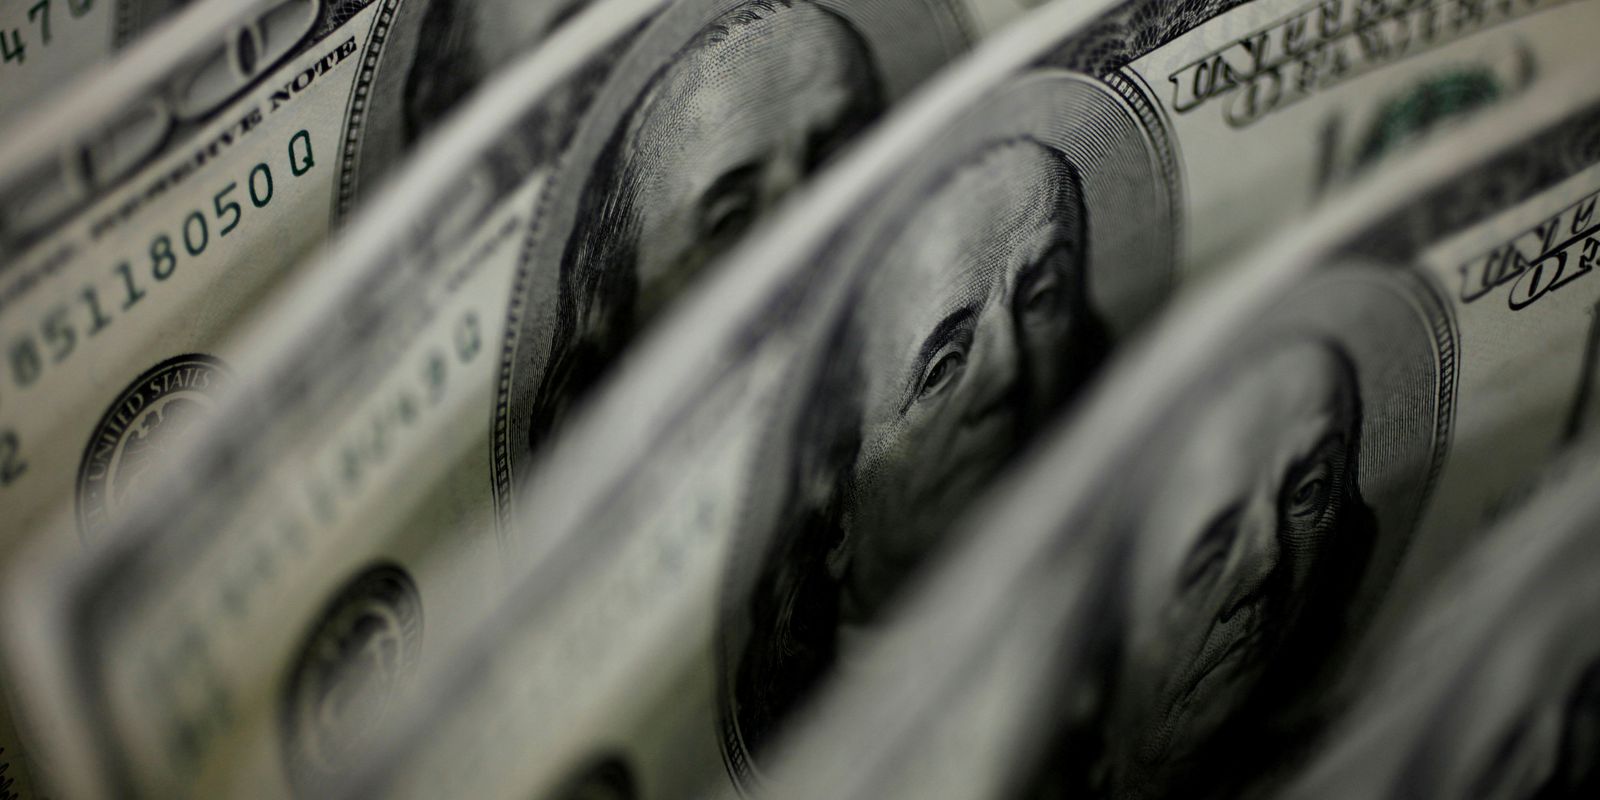 Dólar cai para R$ 5,19 em dia de ajustes no mercado